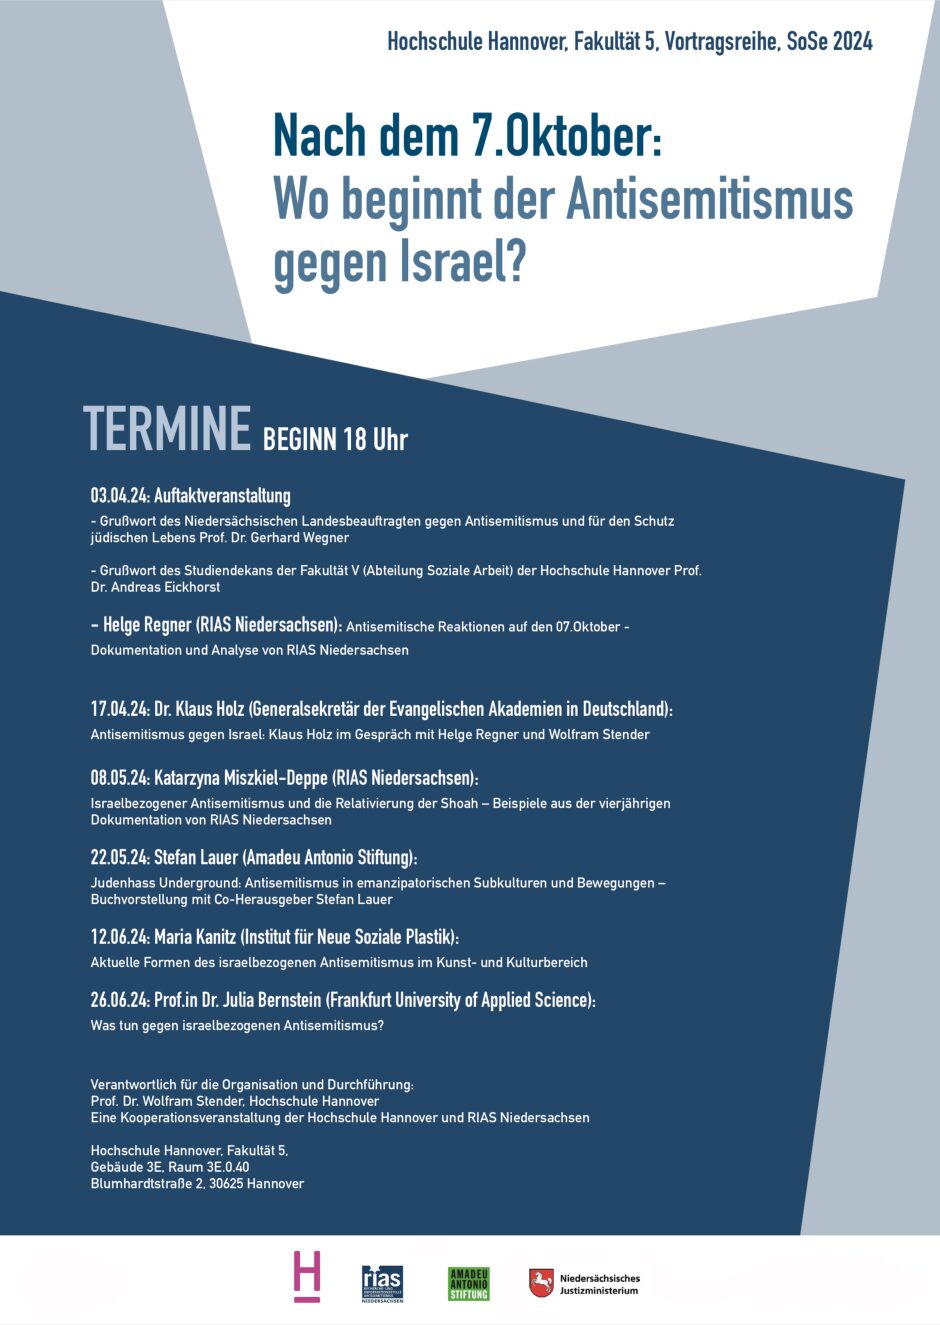 Was tun gegen israelbezogenen Antisemitismus? (mit Prof.in Dr. Julia Bernstein, Frankfurt University of Applied Science)